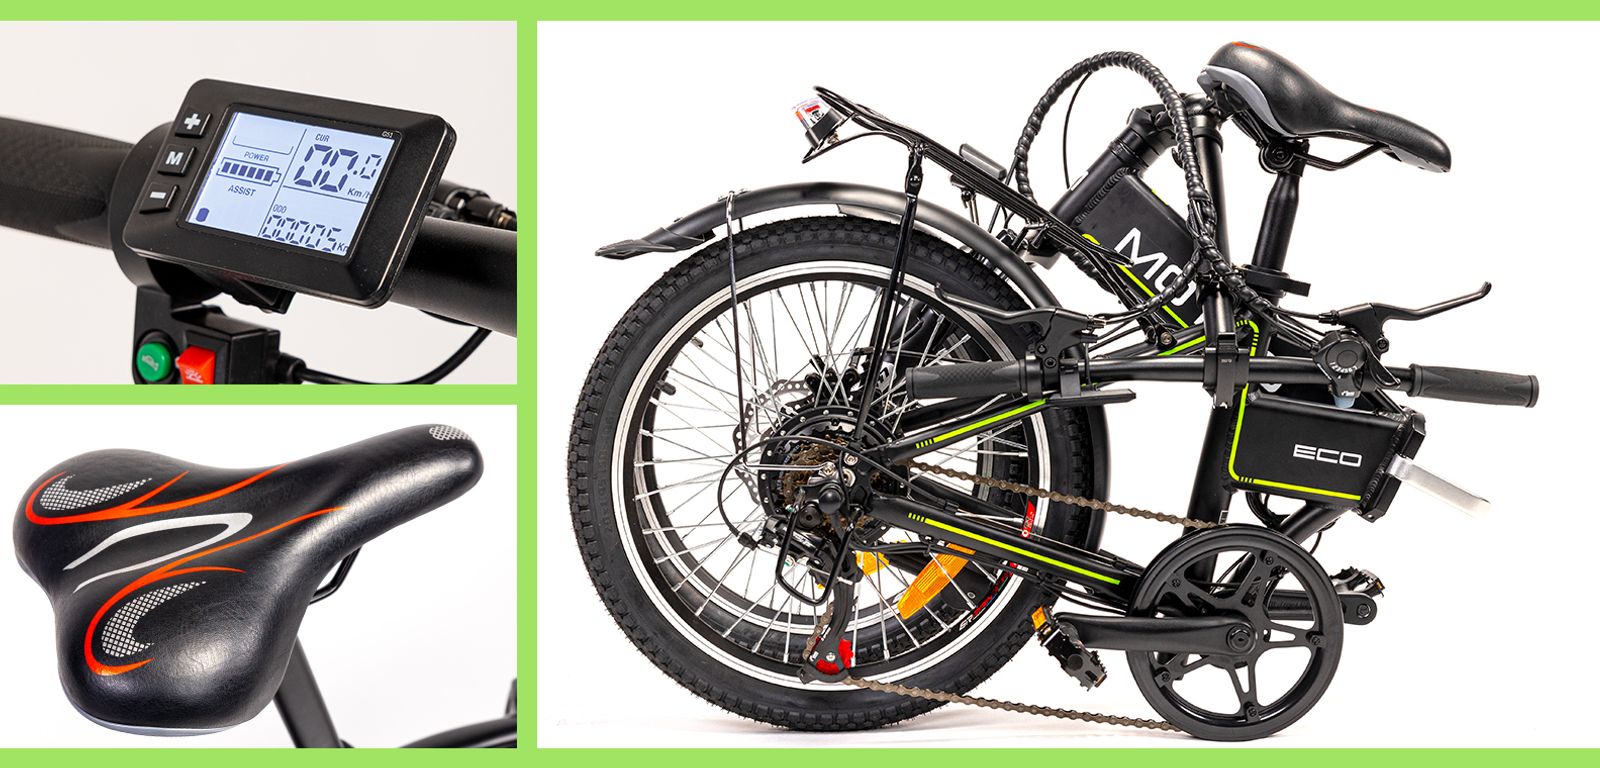 Widok szczegółowy na rower elektryczny Motus Eco - wyświetlacz, siodełko, składanie roweru 